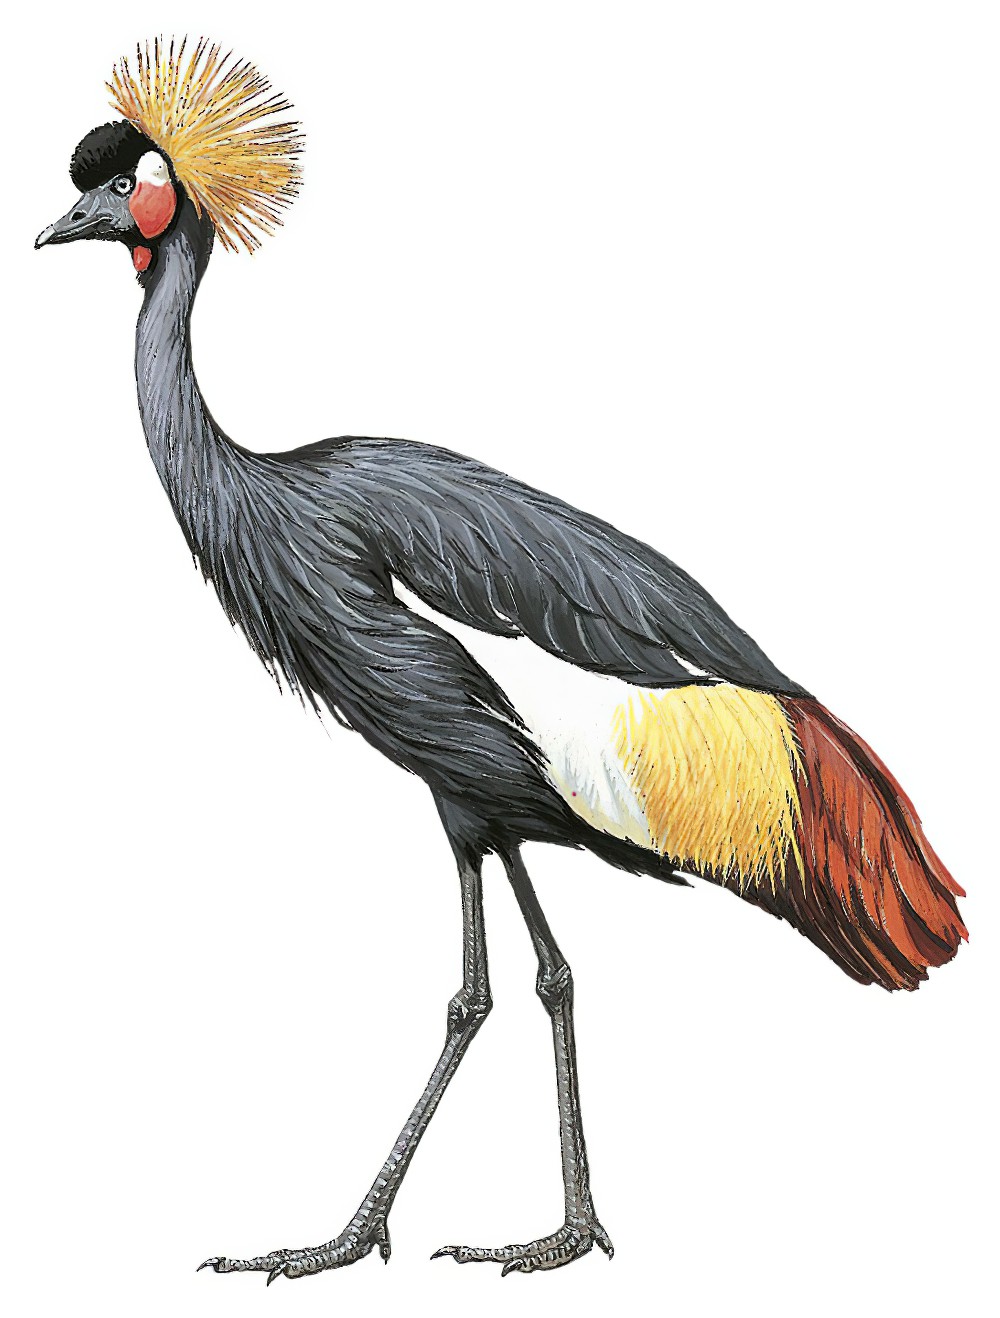 Black Crowned-Crane / Balearica pavonina